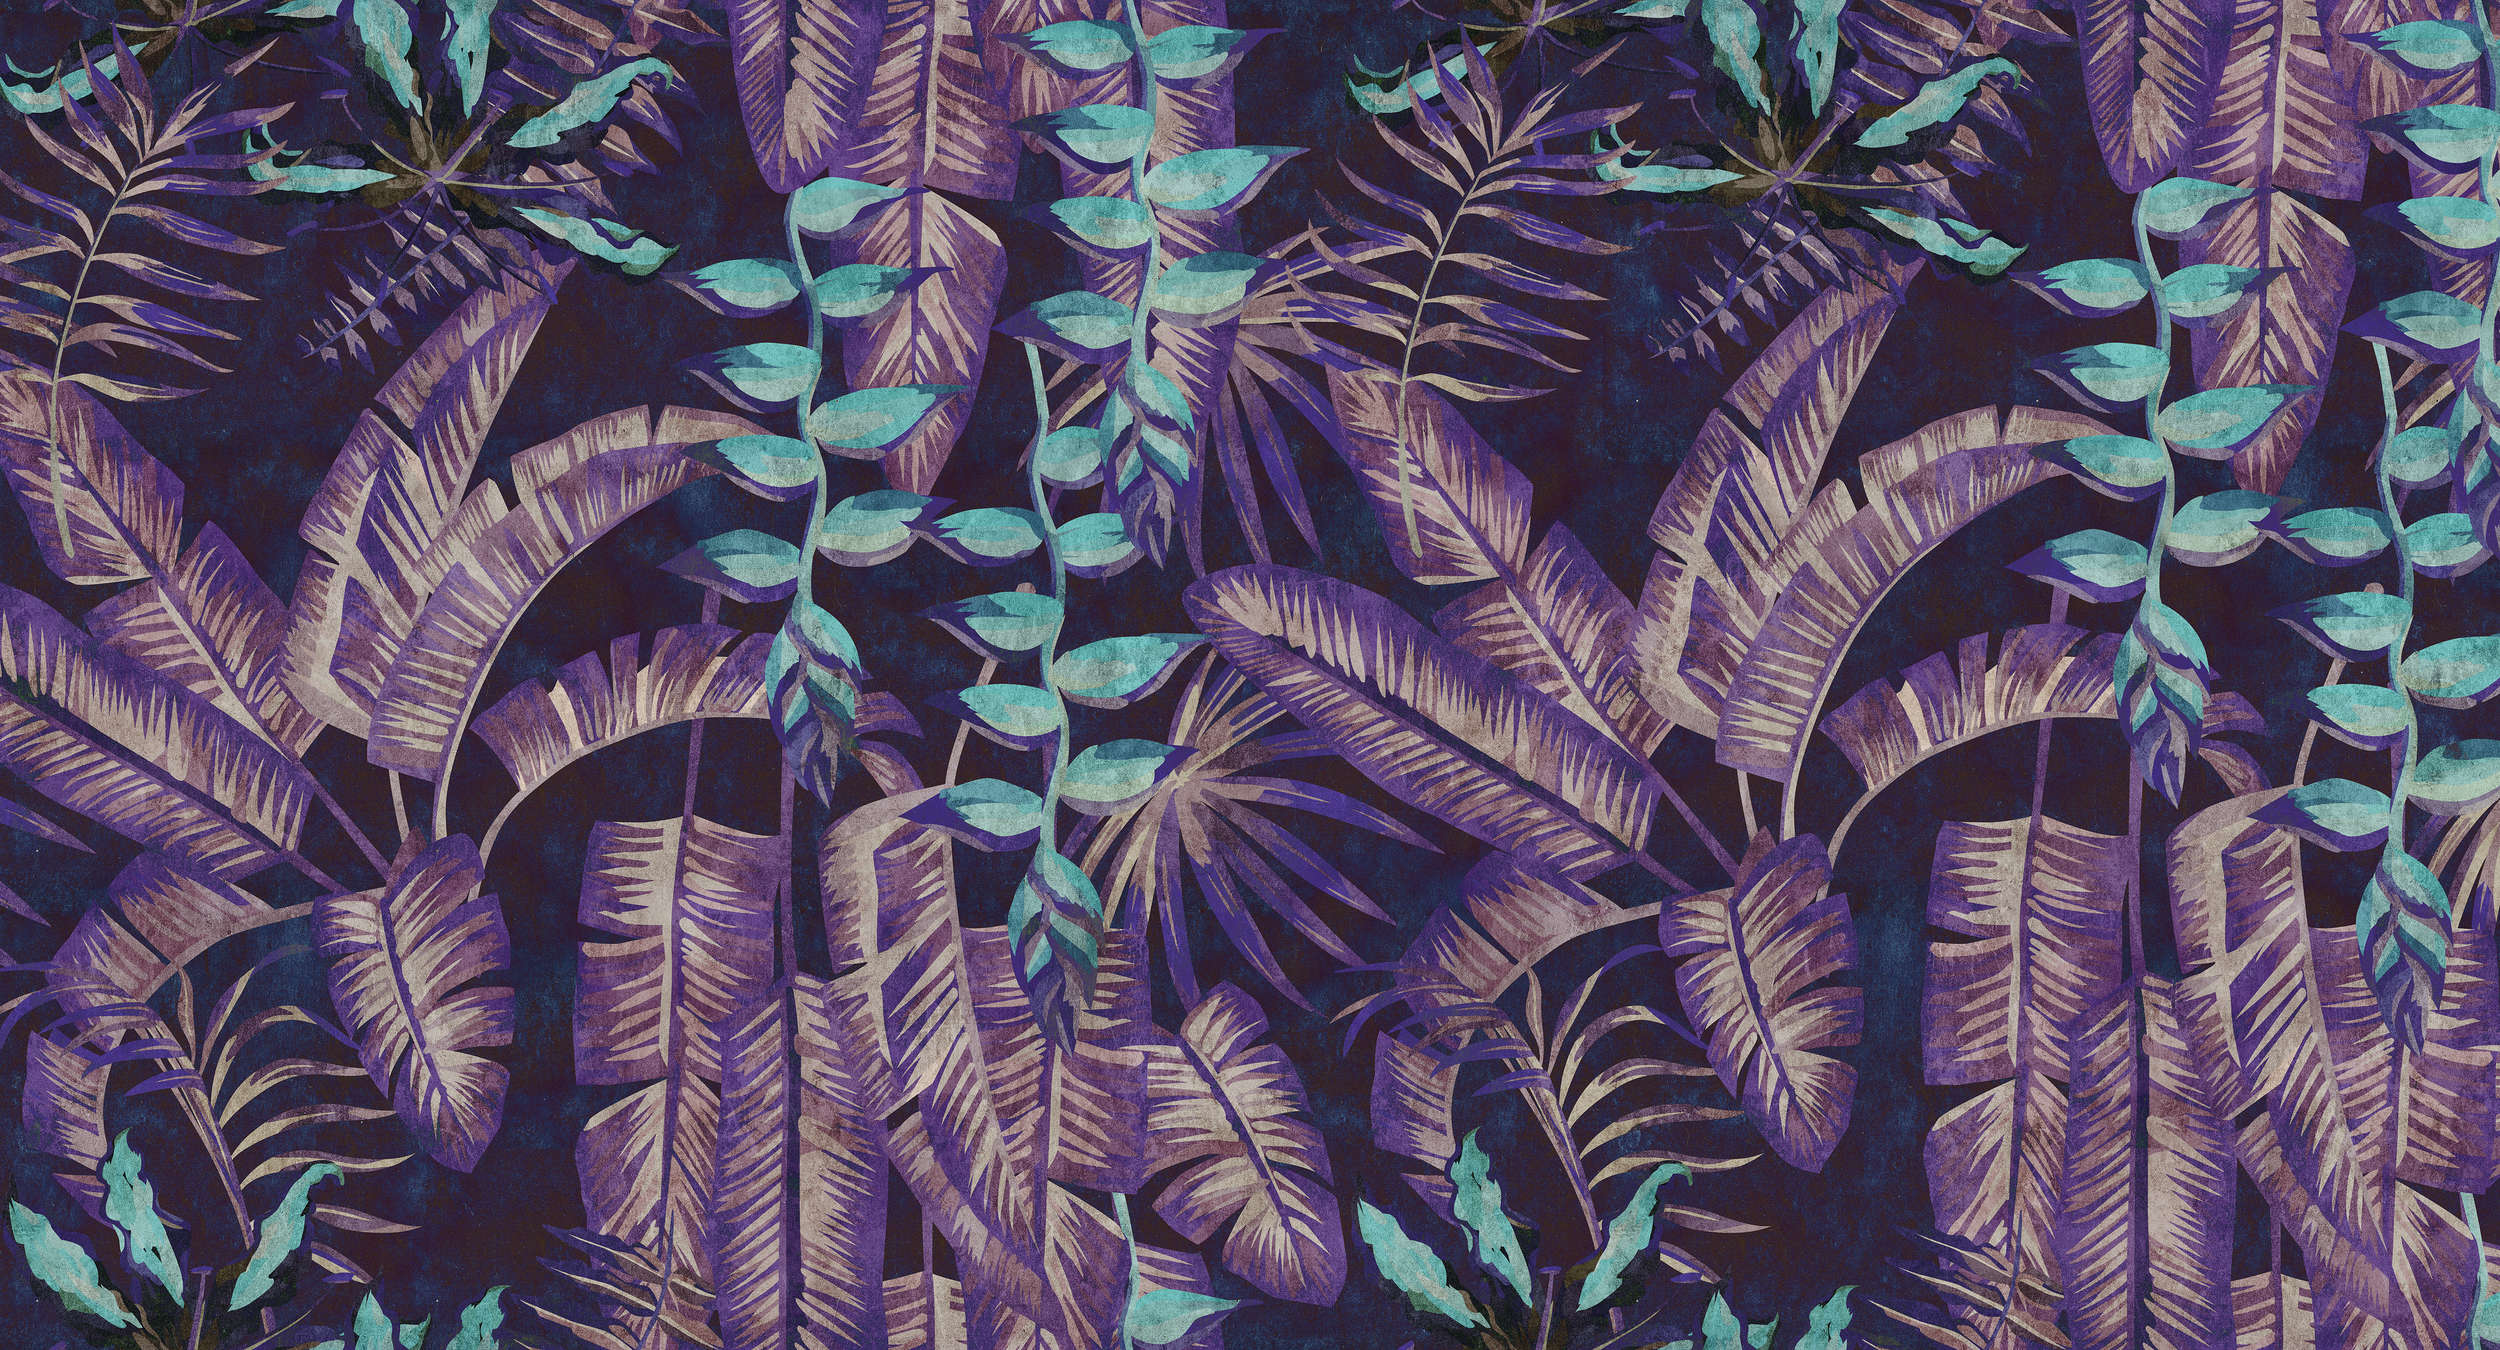             Tropicana 6 - Digitaldrucktapete in Löschpapier Struktur mit Dschungelmotiv – Türkis, Violett | Mattes Glattvlies
        